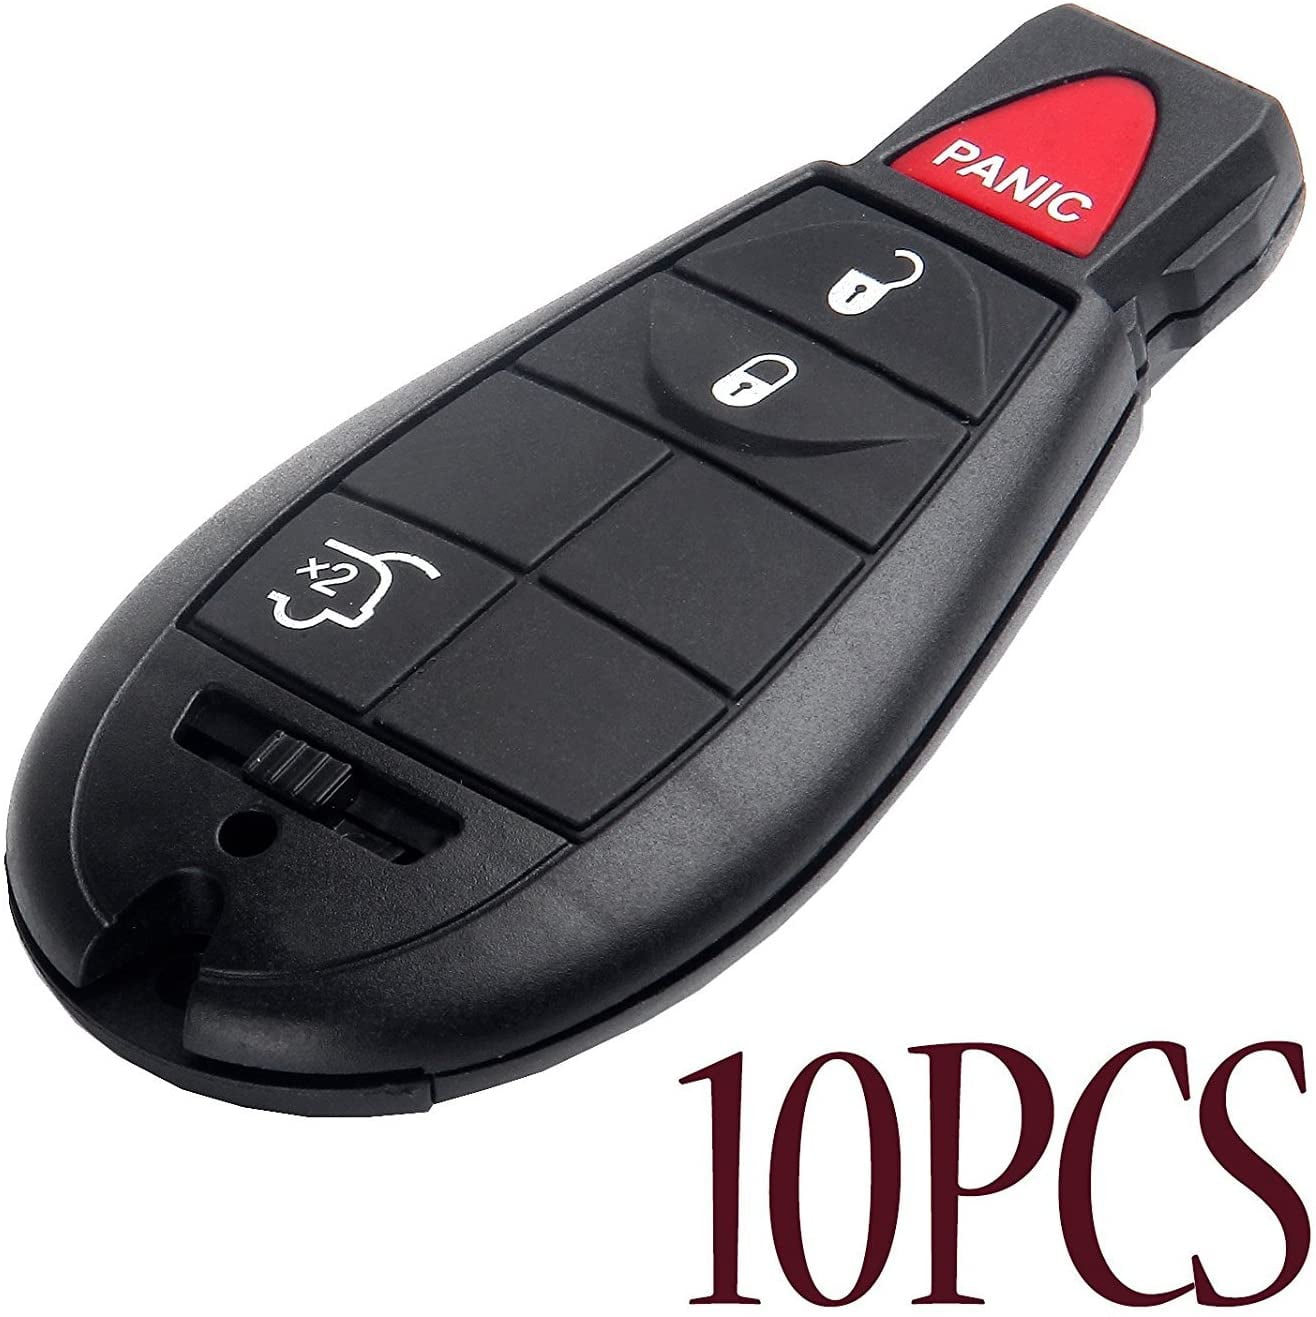 2 Car Key Fob Keyless Smart Remote 4B For 2002 2003 2004 Mercedes C230 